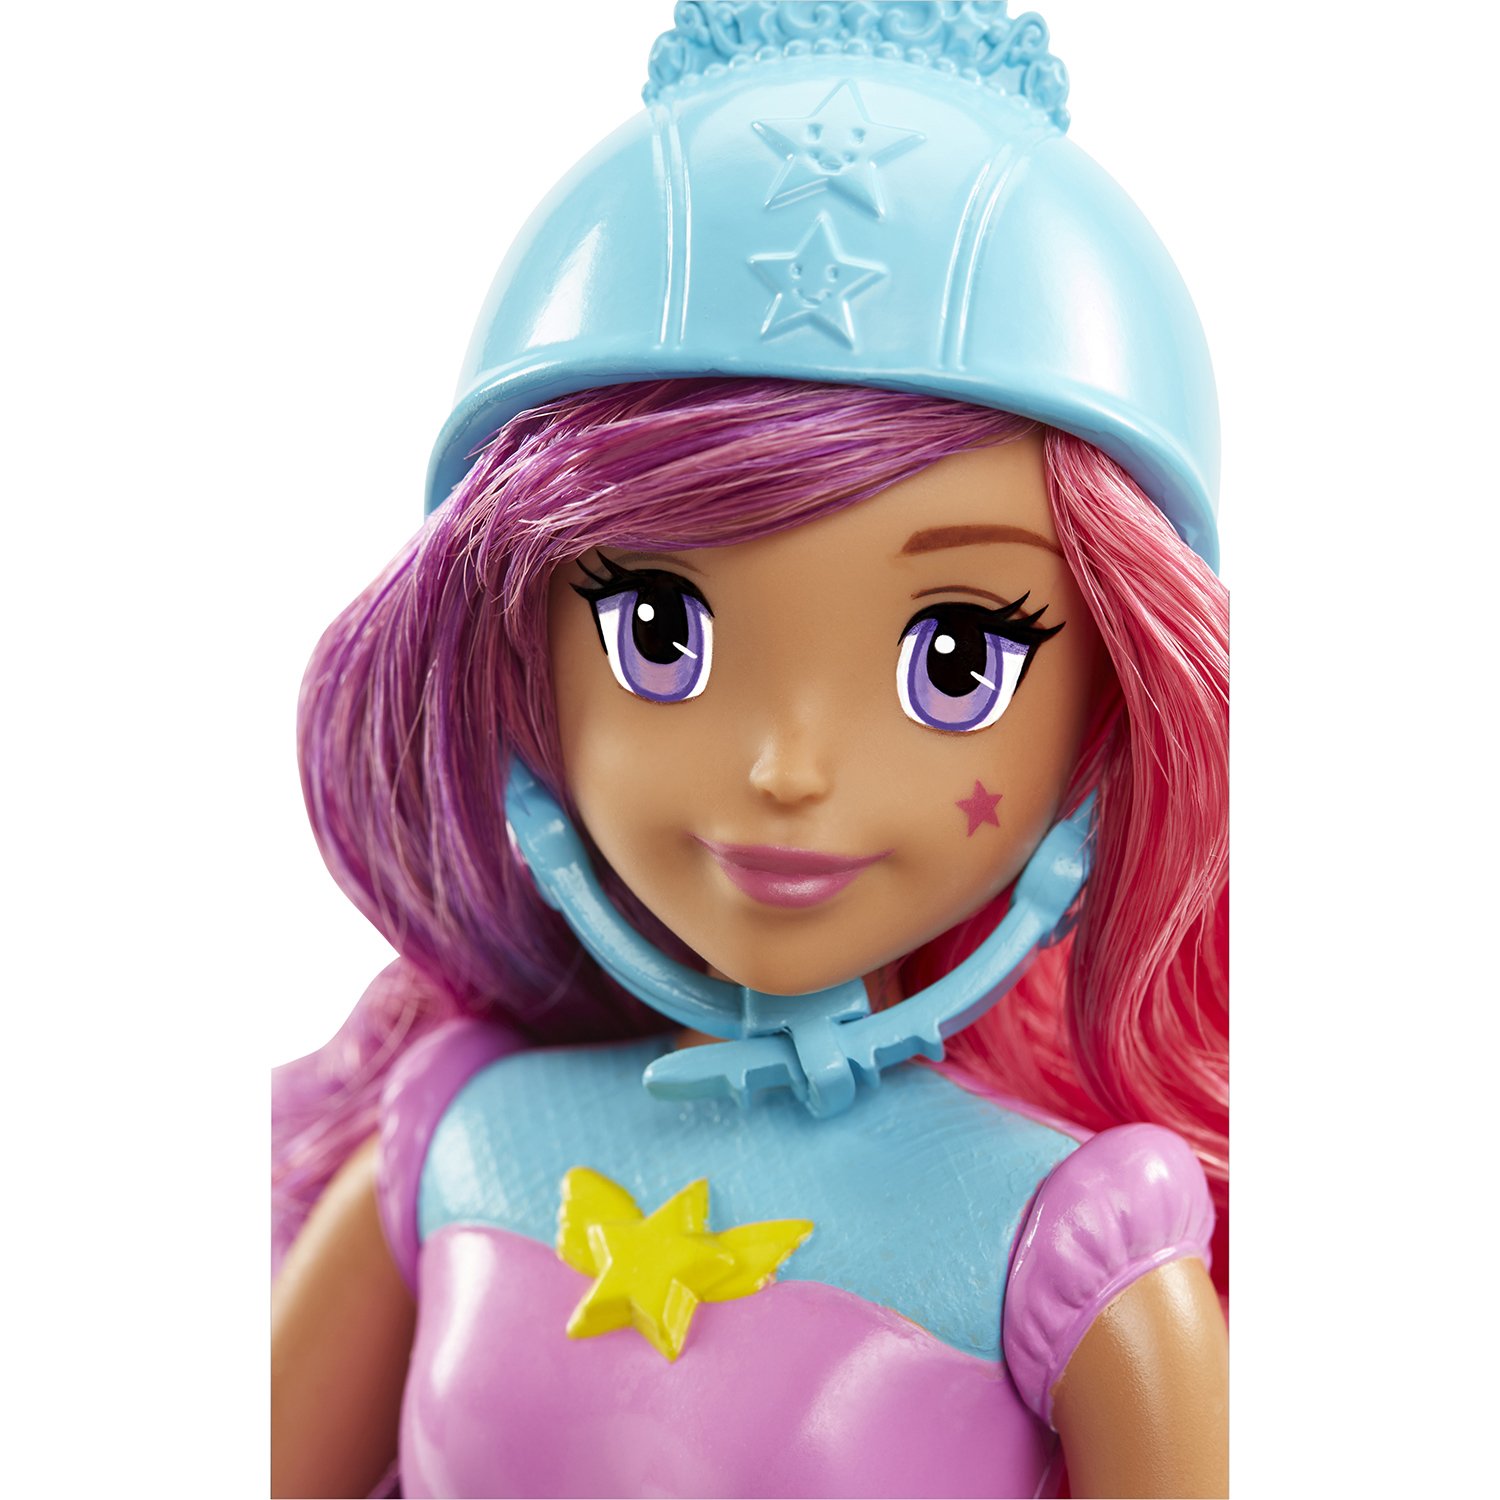 Интерактивная кукла Barbie Виртуальный мир Повтори цвета, 29 см, DTW00